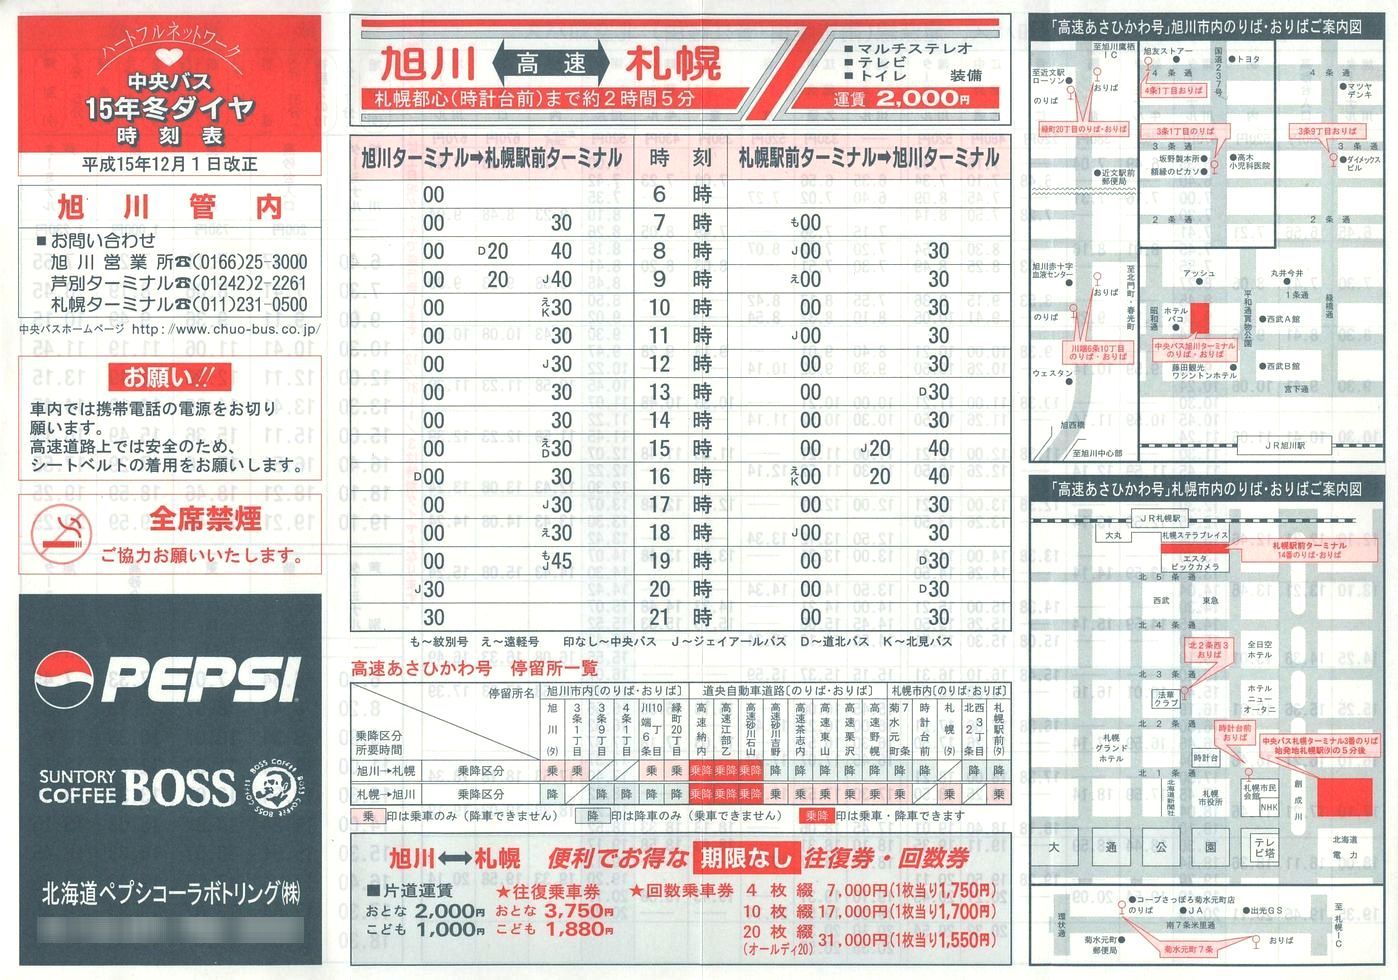 2003-12-01改正_北海道中央バス(空知)_旭川管内線時刻表表面